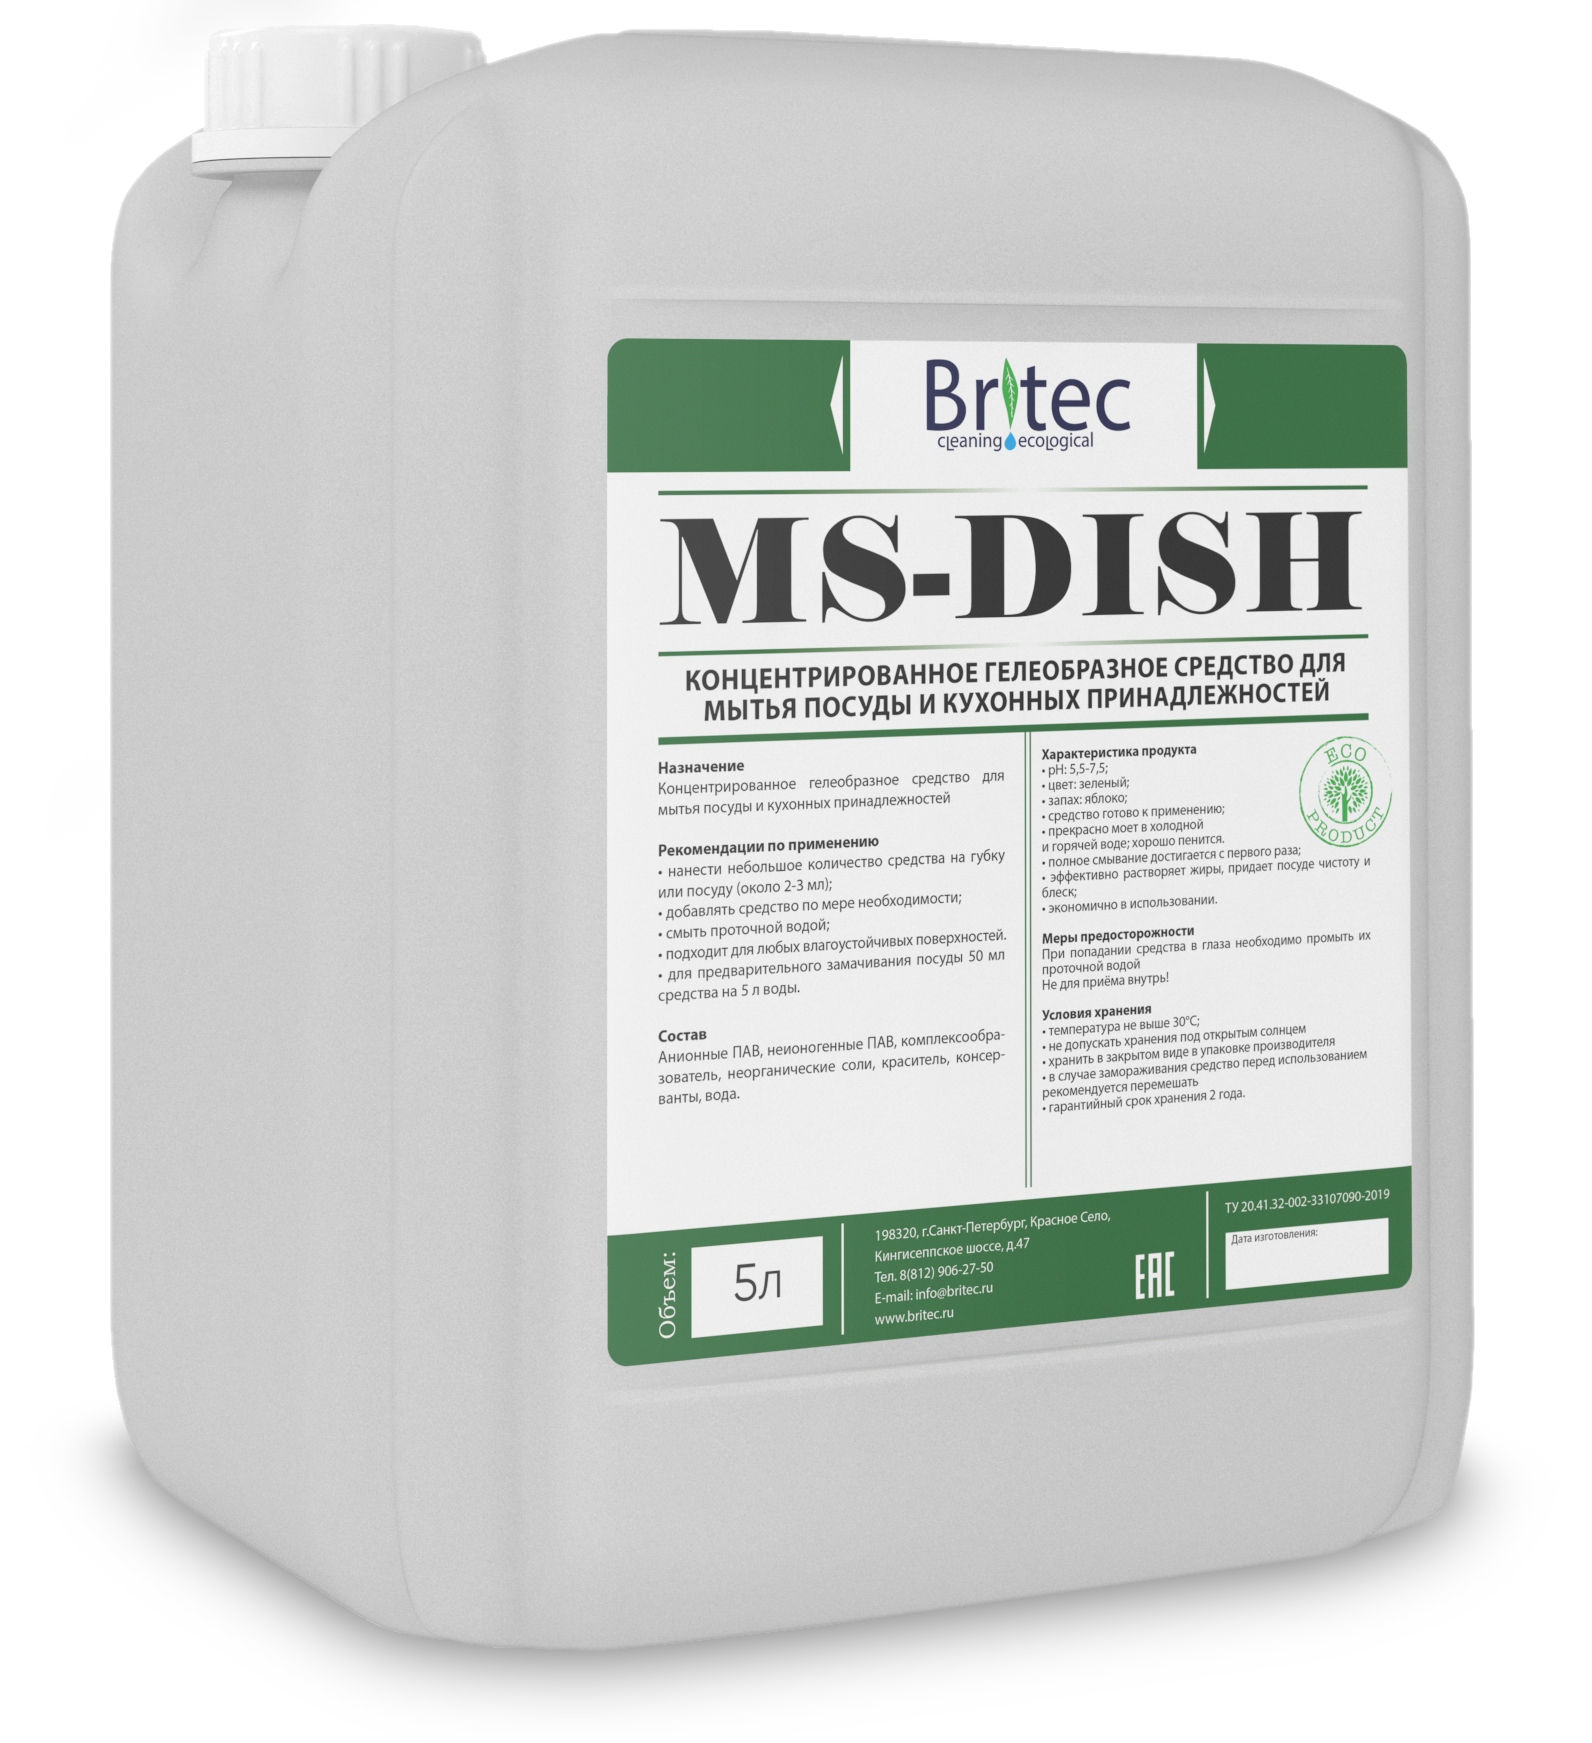 MS-DISH